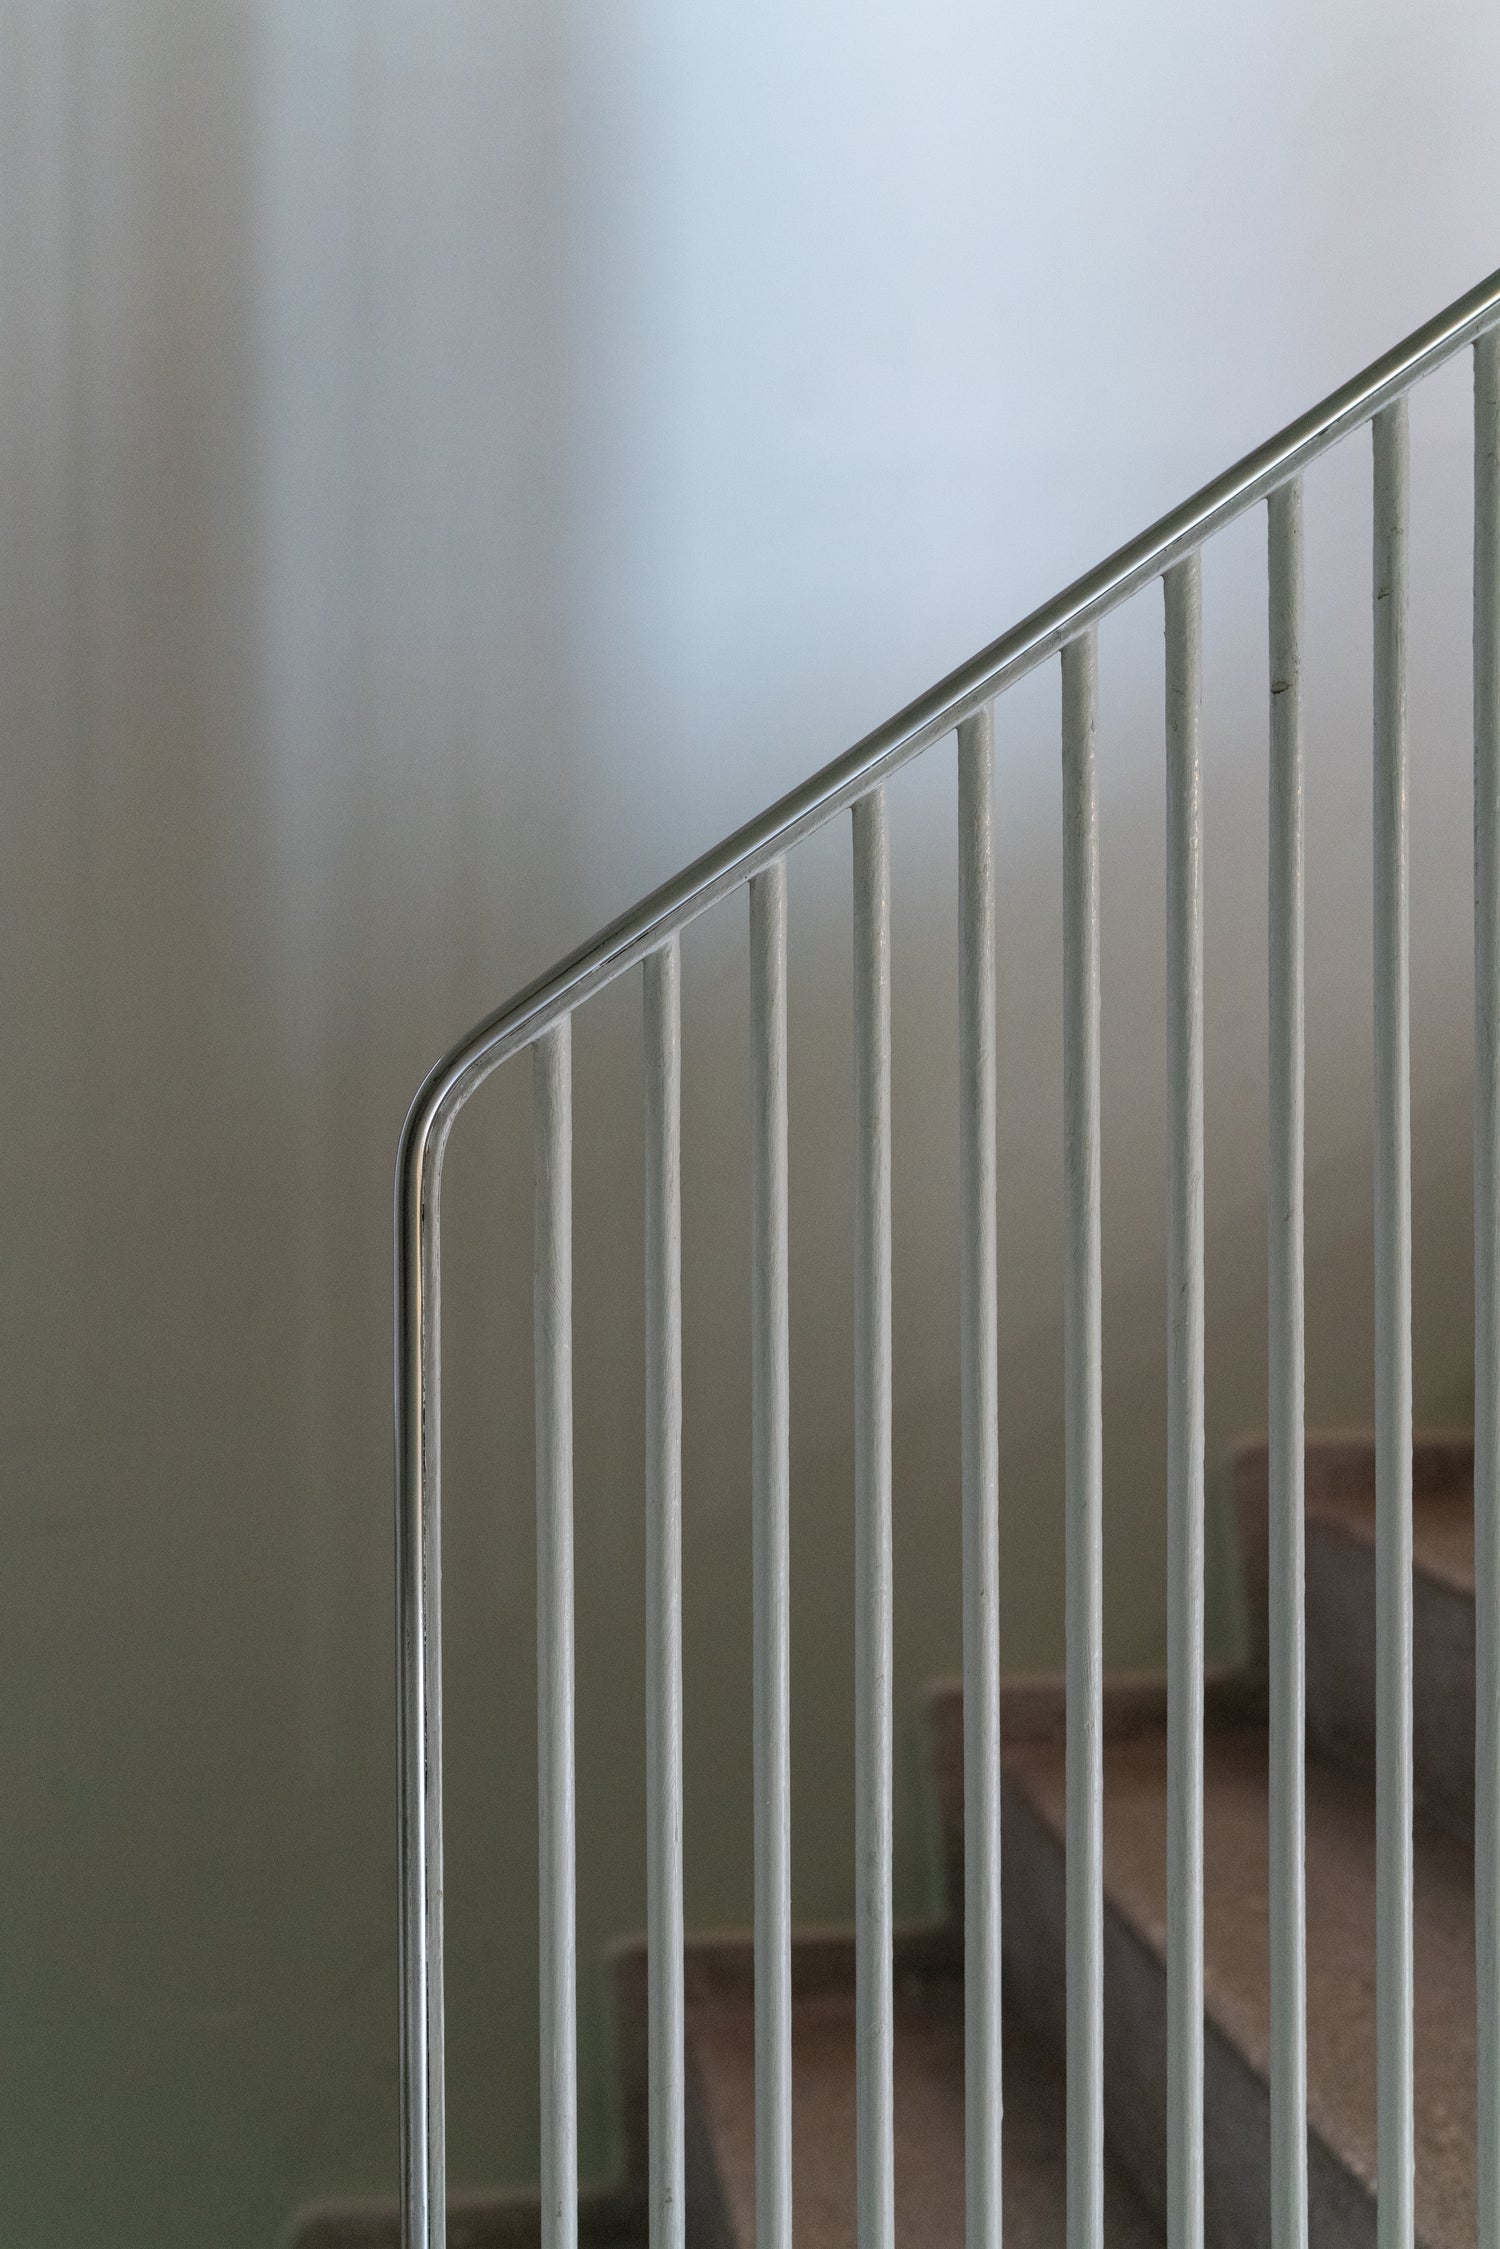 Classic Arne Jacobsen railing in Stellings Hus